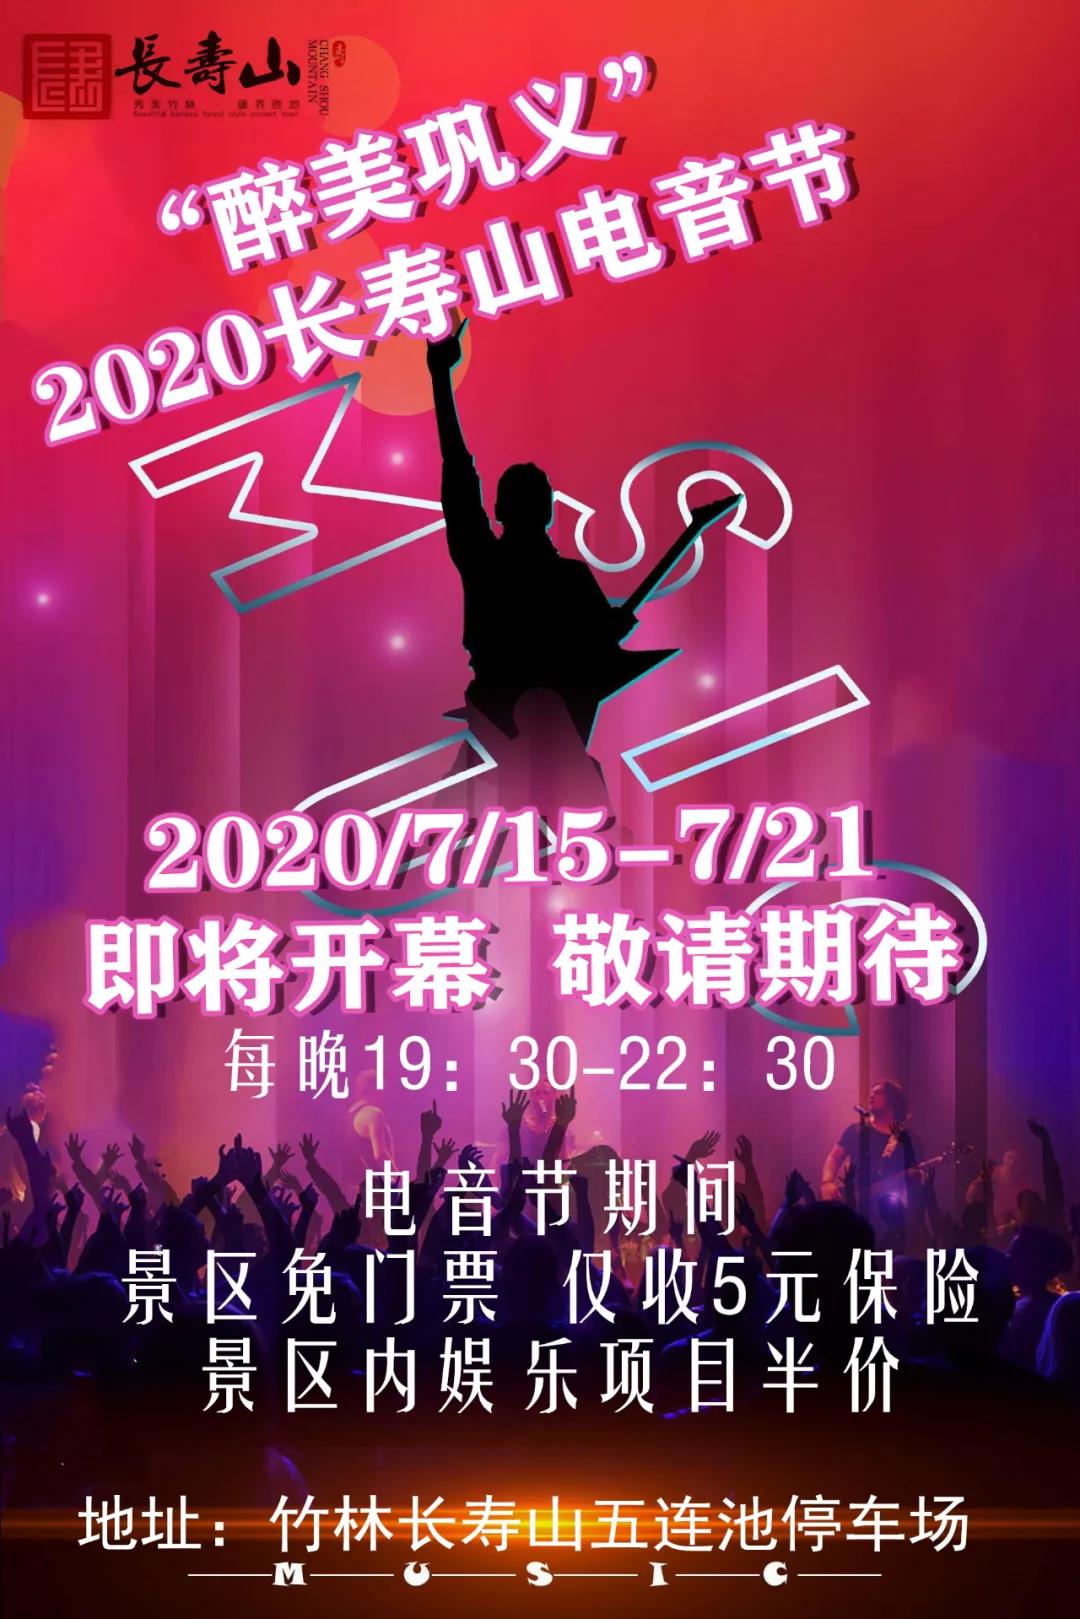 “醉美巩义”竹林长寿山电音节将于2020年7月15日晚7:30分隆重开幕，届时欢迎广大宾朋前来品美